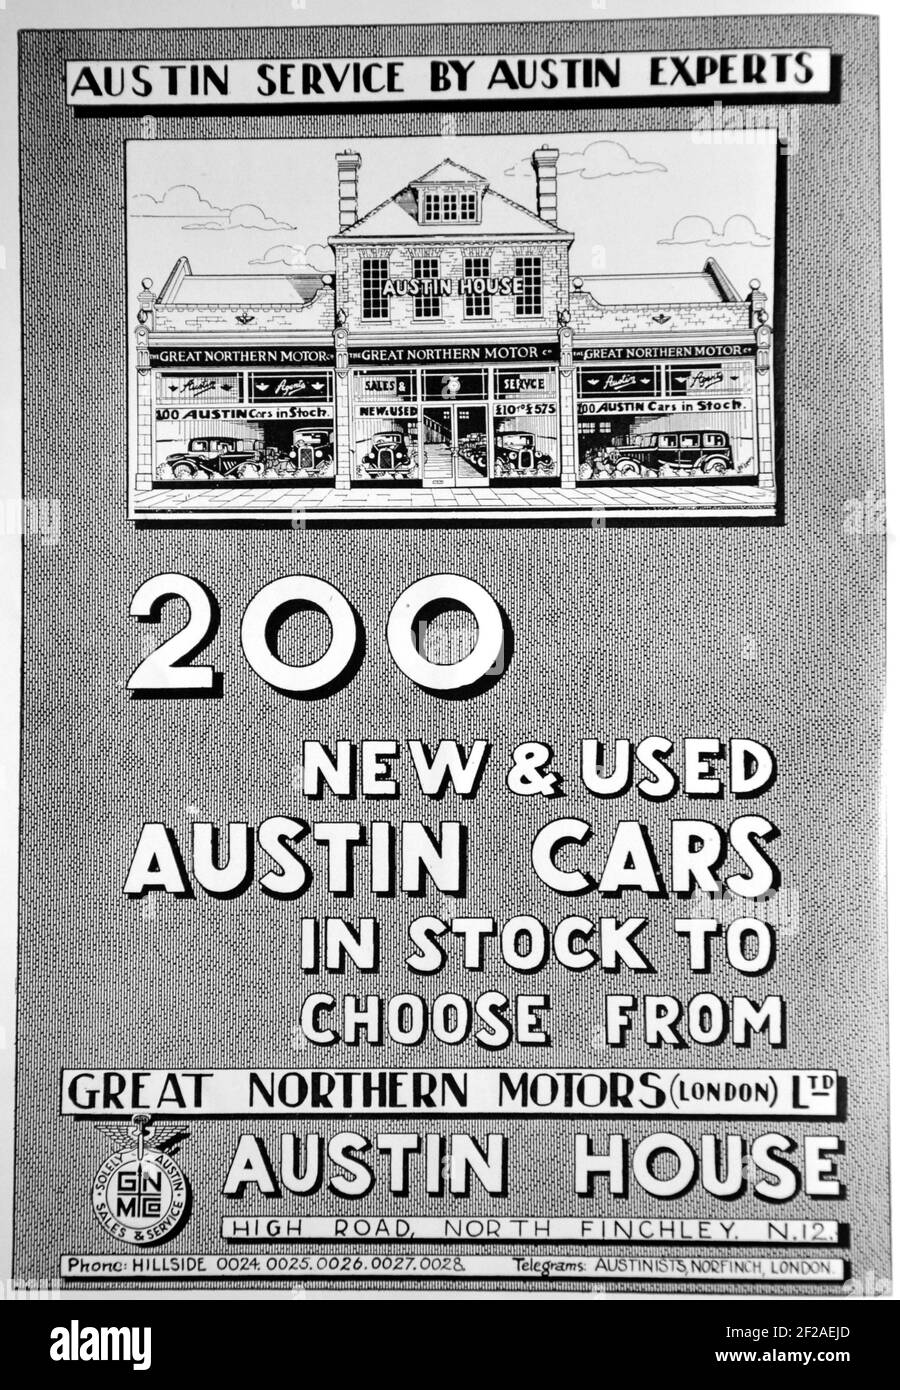 Publicité pour les voitures Austin neuves et d'occasion à Great Northern Motors, High Road, North Finchley, N12. Tiré du livre: 'FINCHLEY CELEBRATIONS ROYAL SILVER JUBILEE May 1935 souvenir Handbook'. Banque D'Images